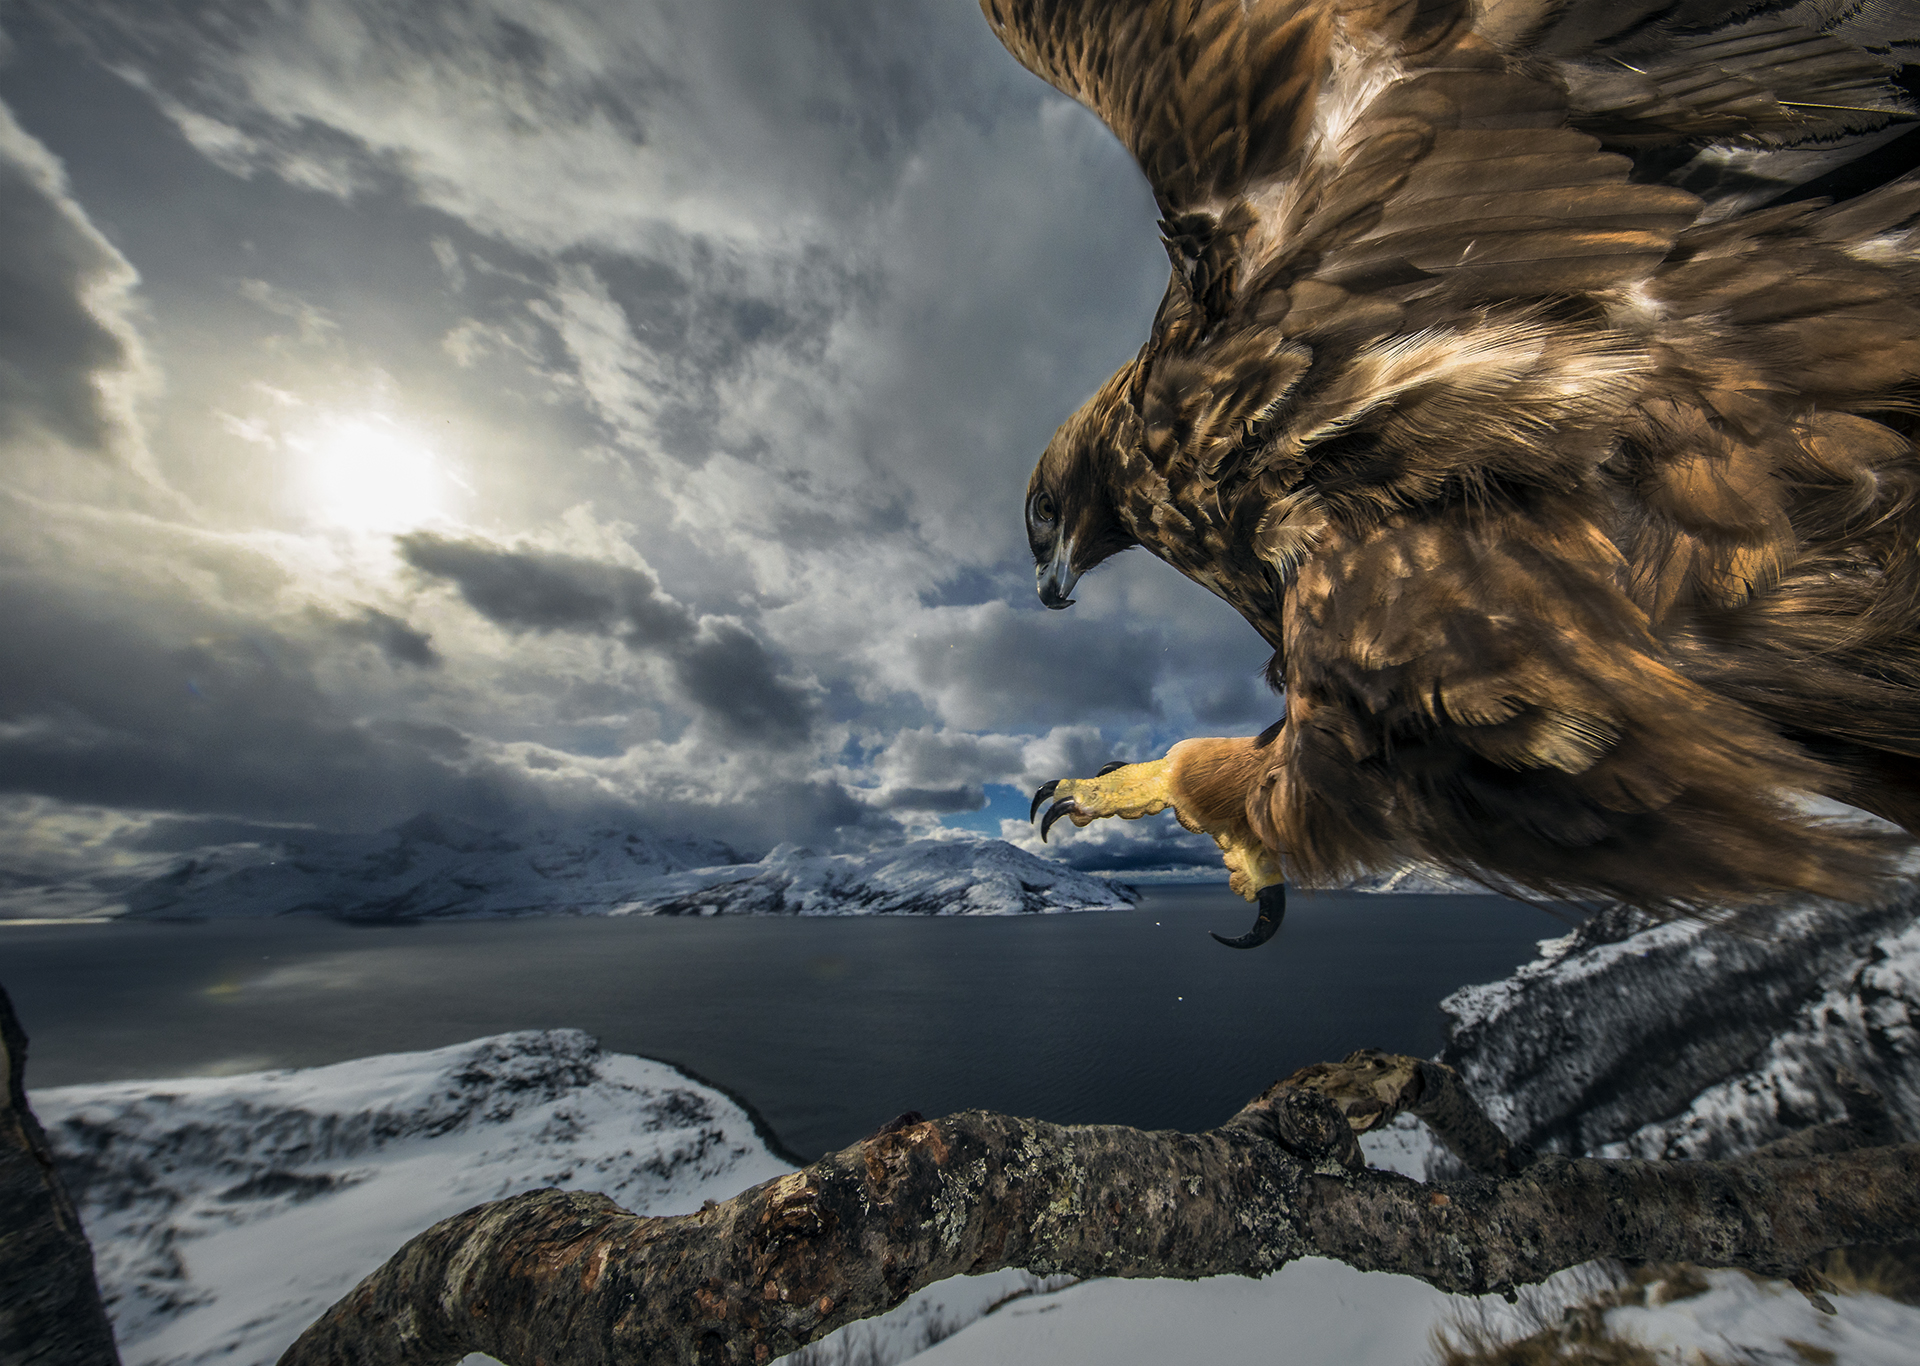 Pinguins in Antarctica door fotograaf Stefan Christmann voor Nature Talks Fotofestival